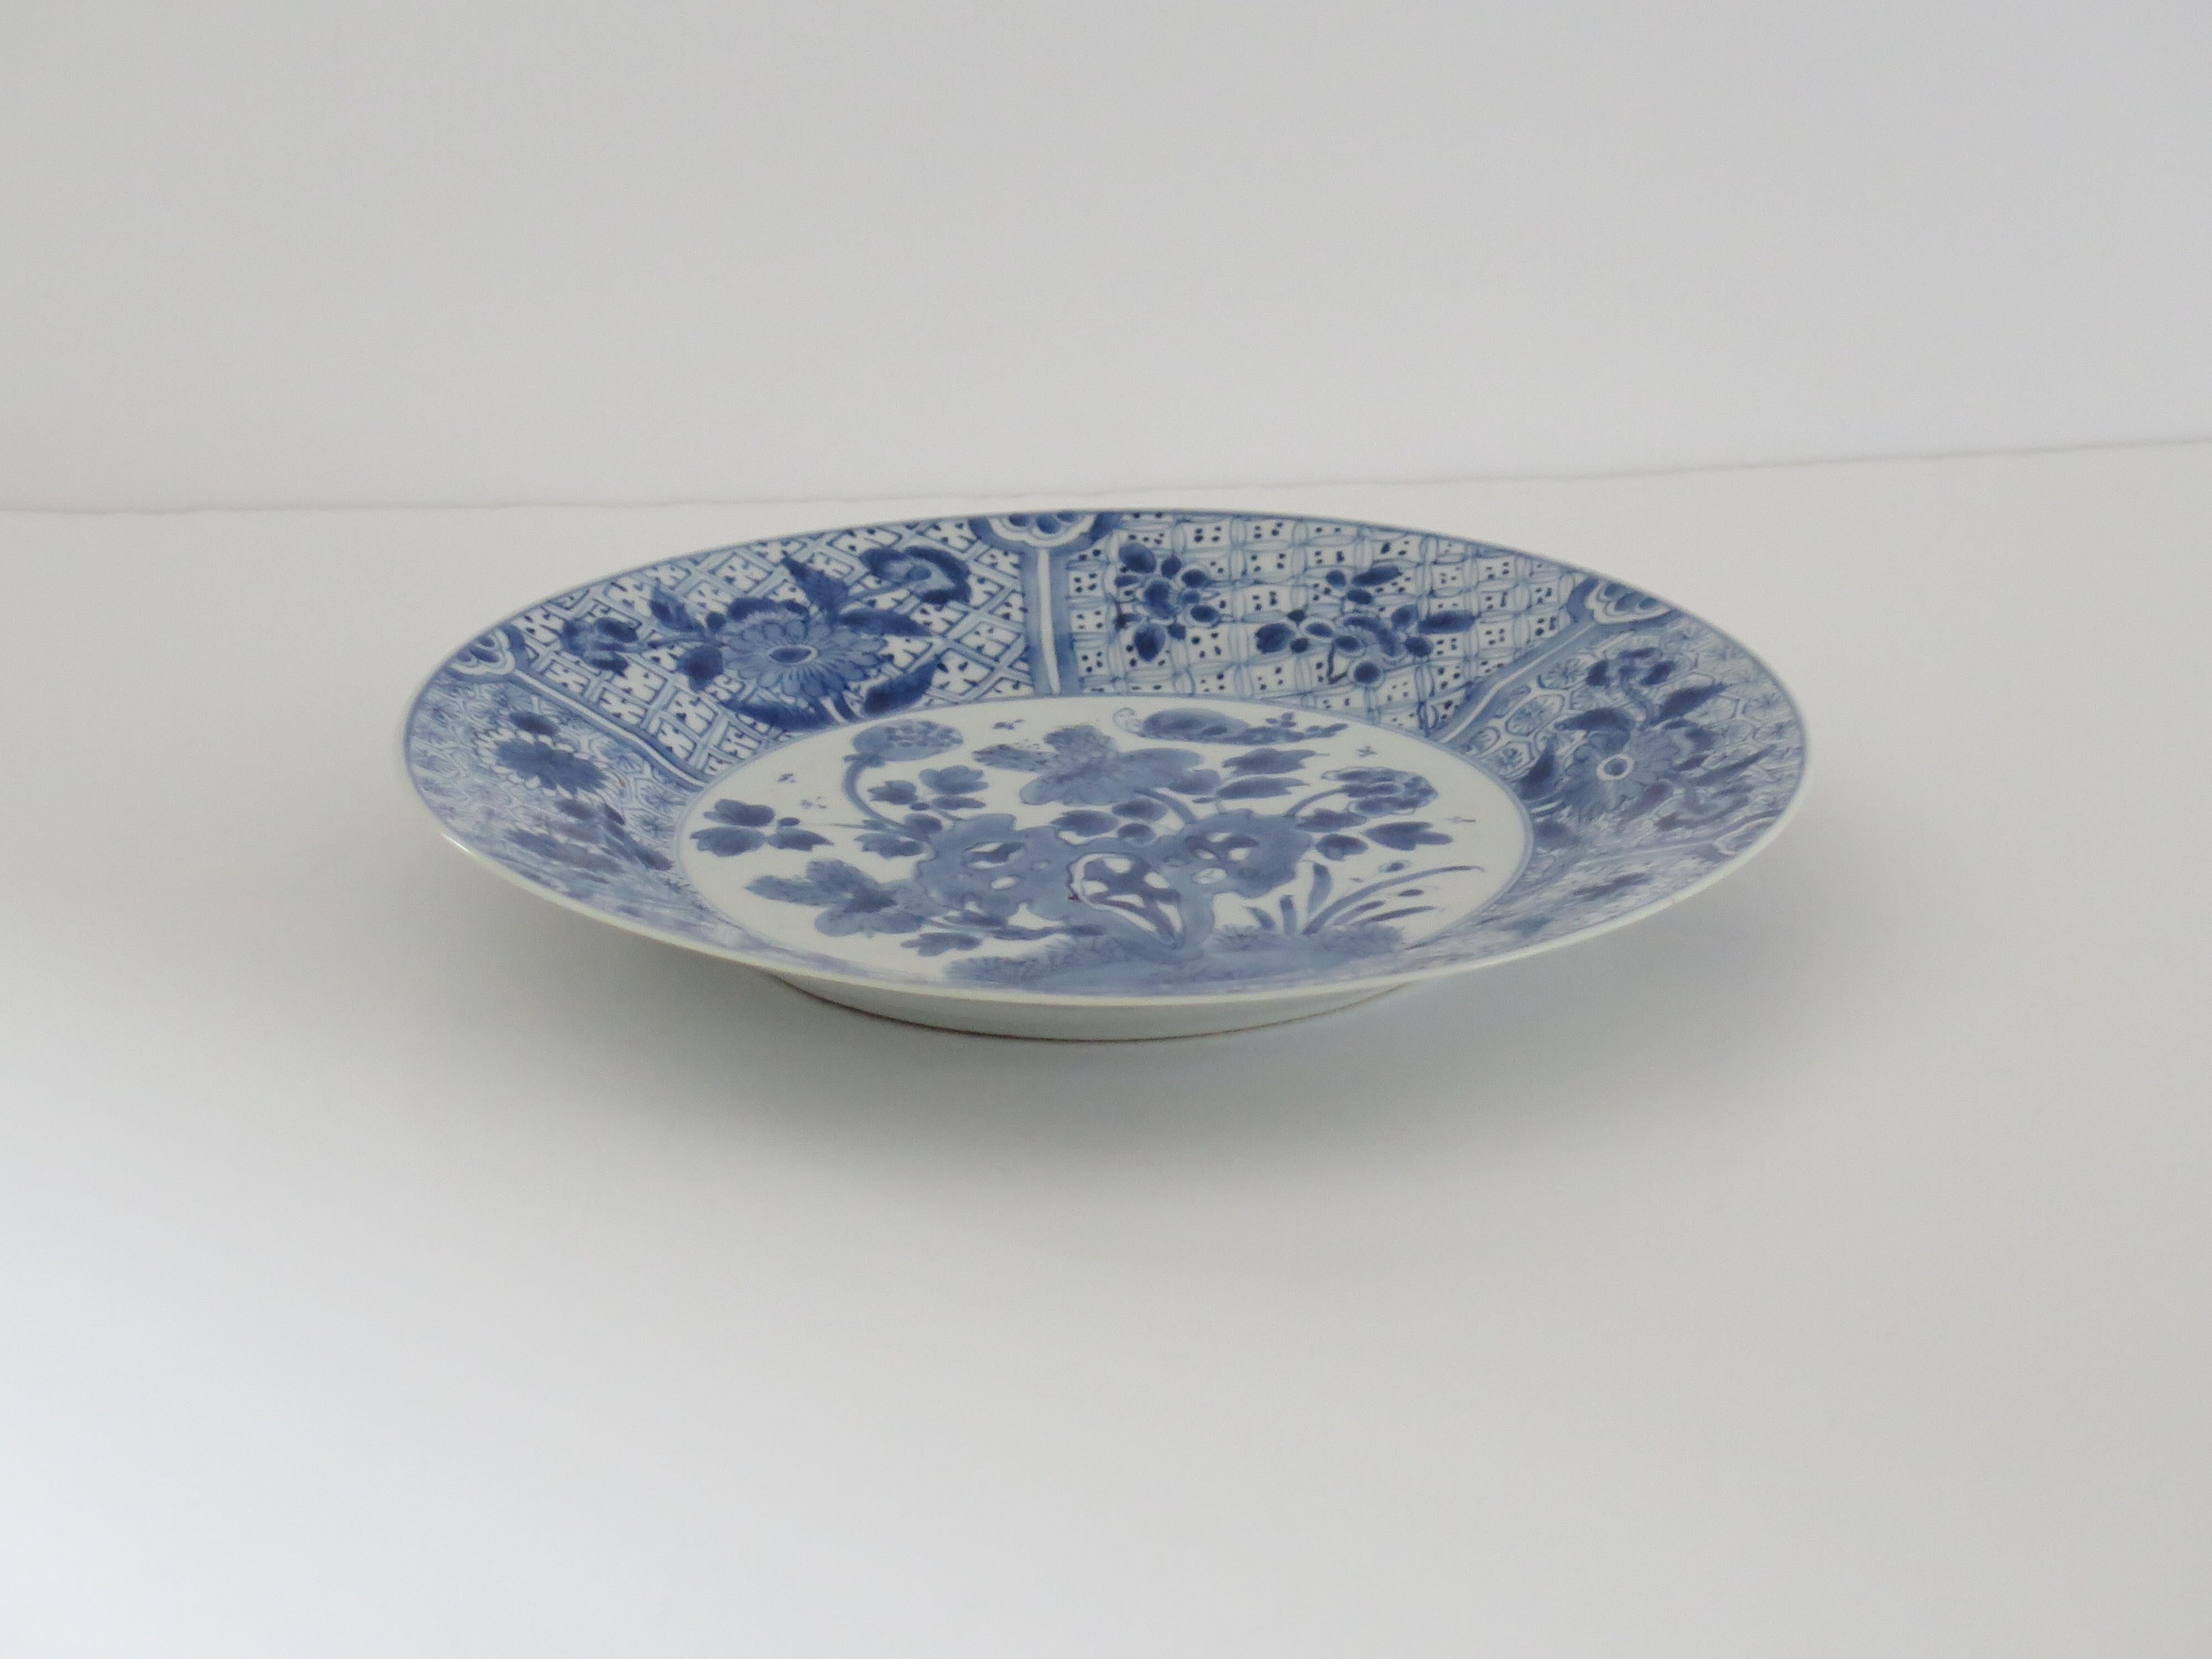 Dies ist ein sehr schön handbemaltes chinesisches Porzellan blau und weiß großen Teller oder Schale, aus der Qing, Kangxi-Periode, 1662-1722.

Der Teller / die Schale ist fein getöpfert mit einem sorgfältig geschnittenen Bodenrand und einer schönen,